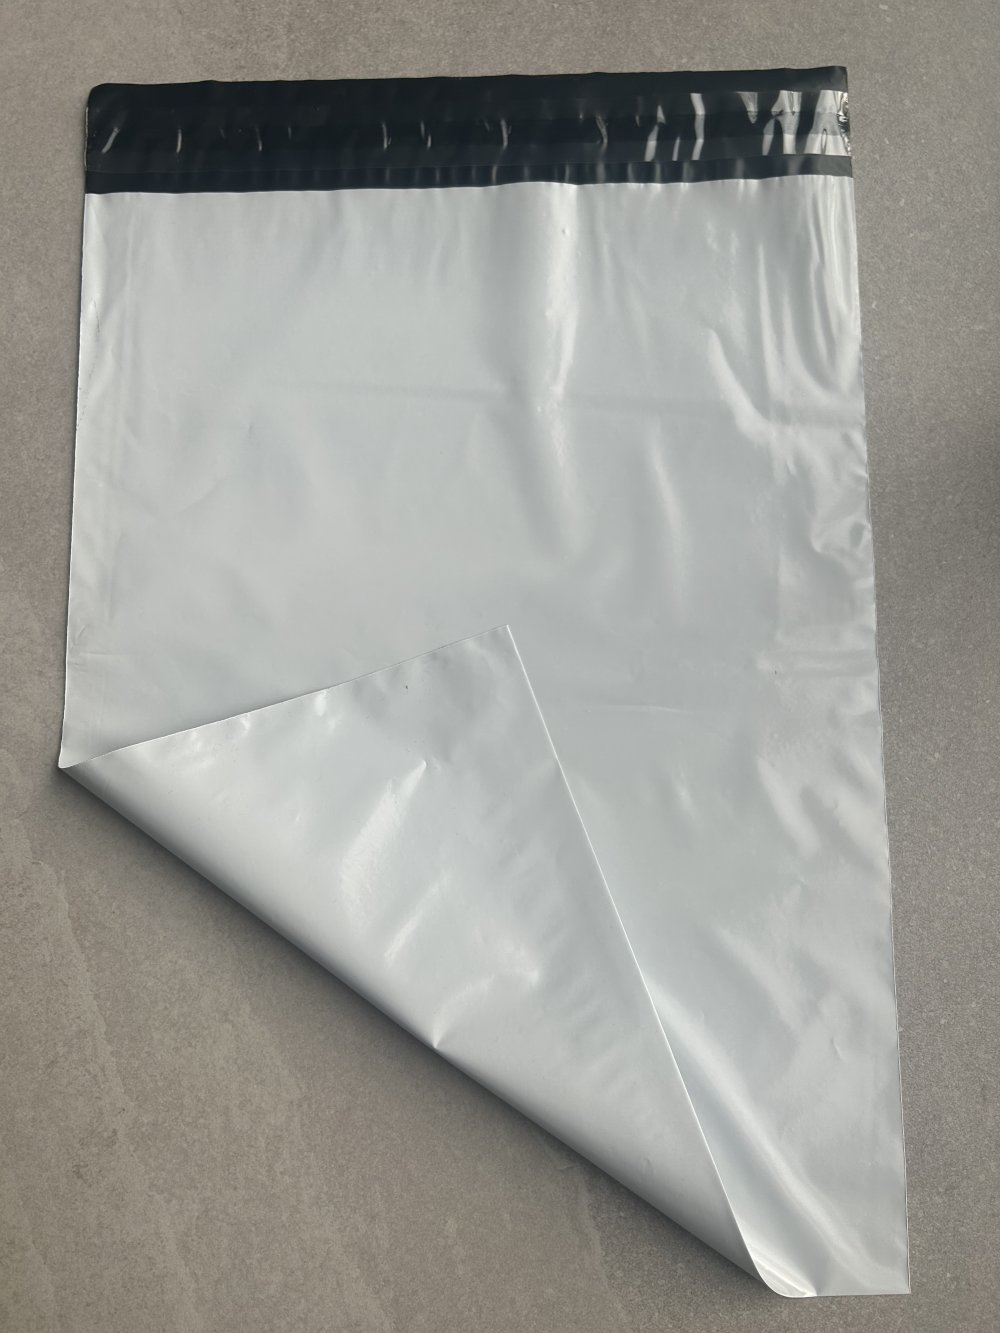 Sac Envoie Colis Vinted Emballage Enveloppe Plastique Expedition